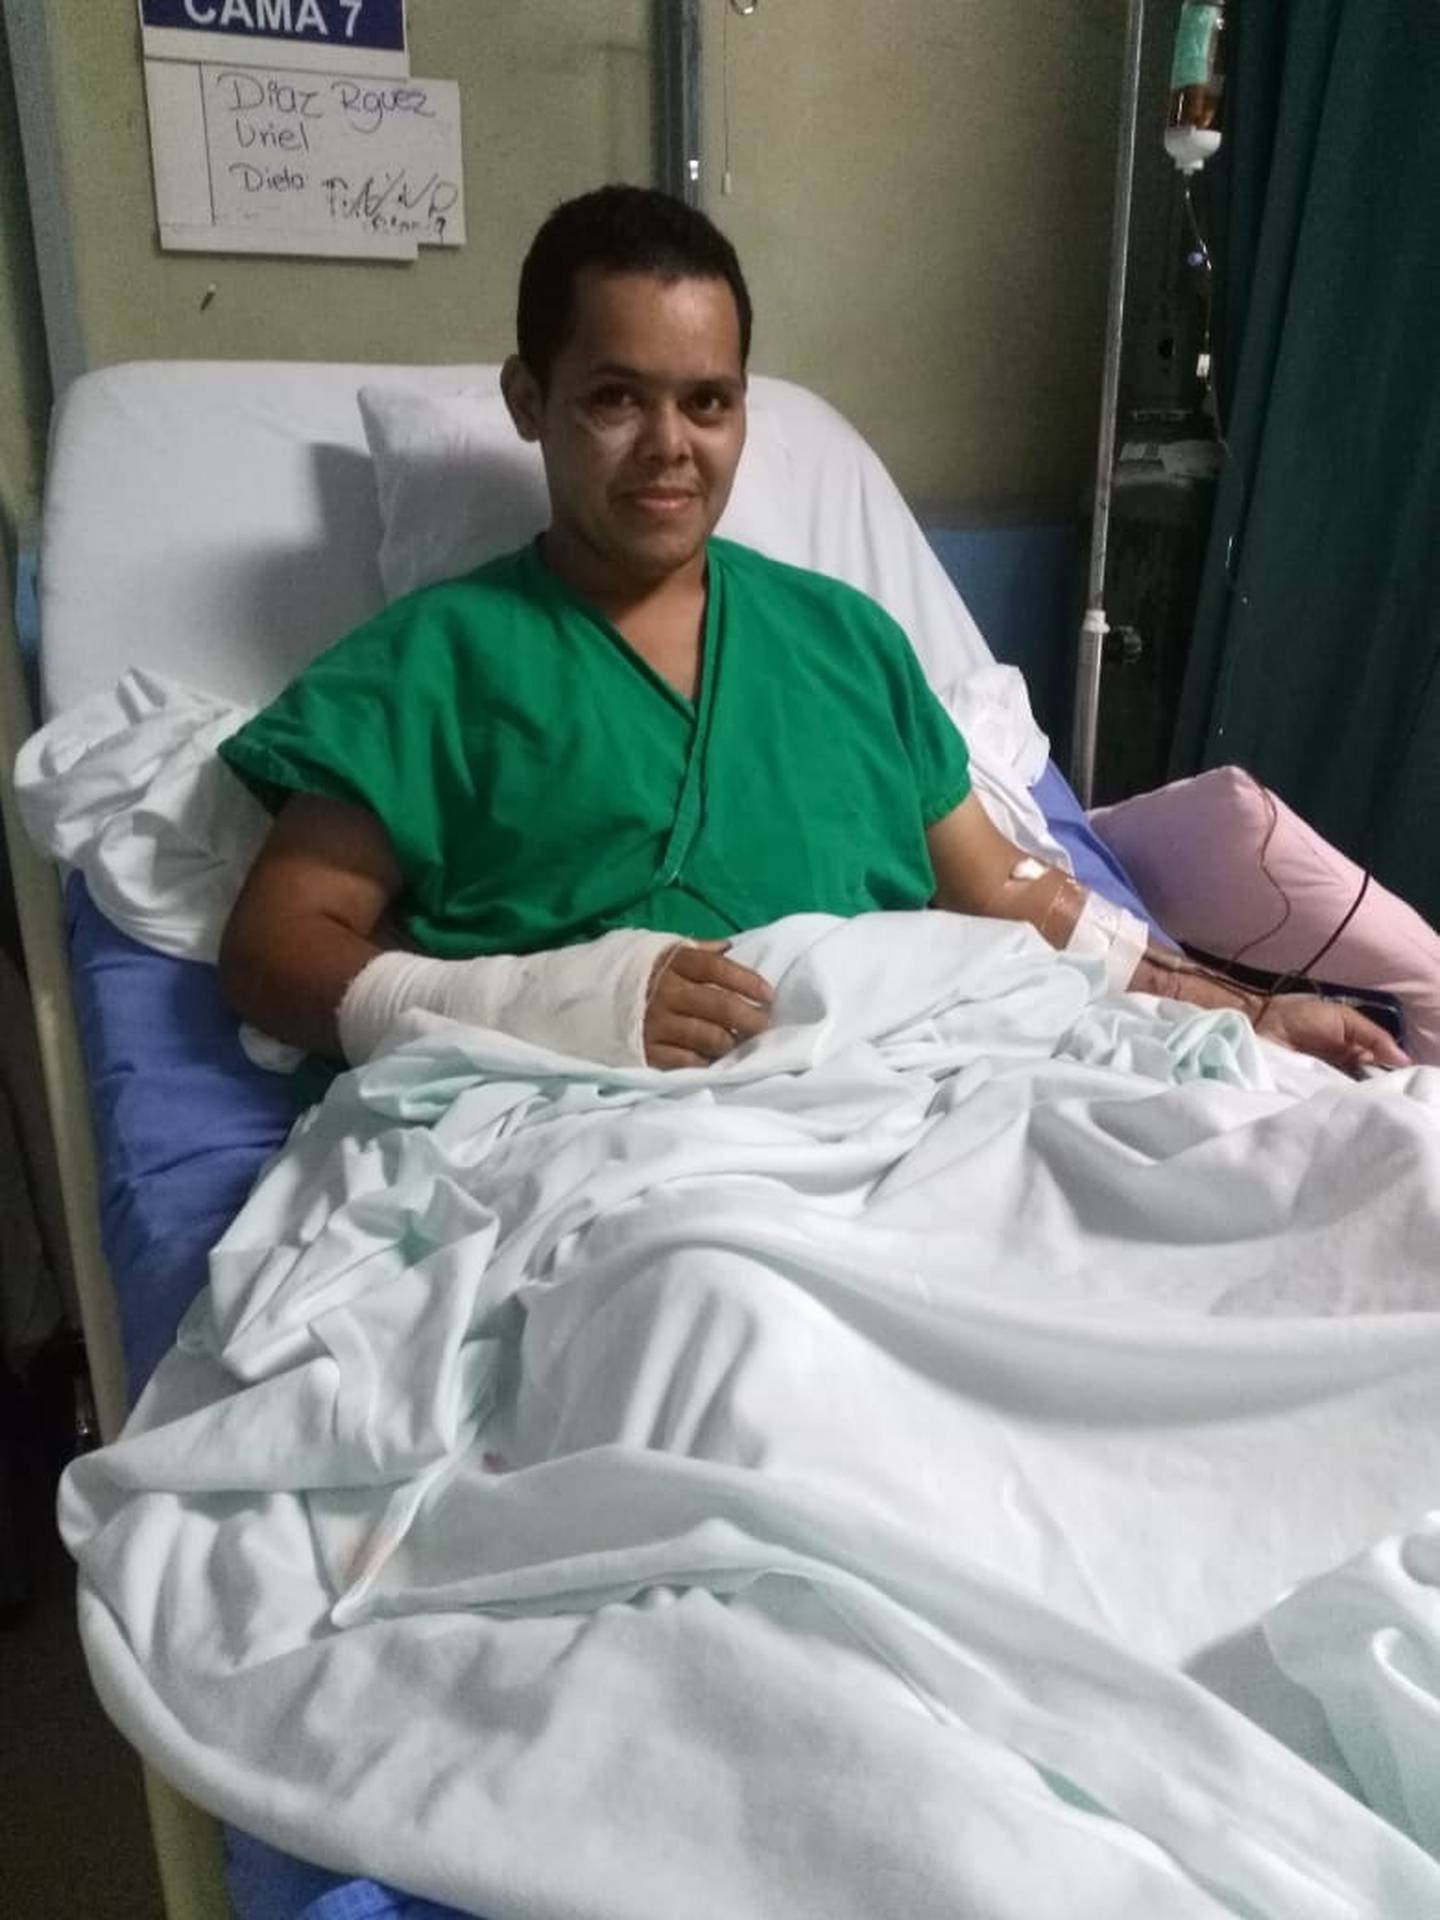 Uriel Díaz Rodríguez, joven que sobrevivió a accidente de tránsito en Guápiles. Foto cortesía Uriel Díaz